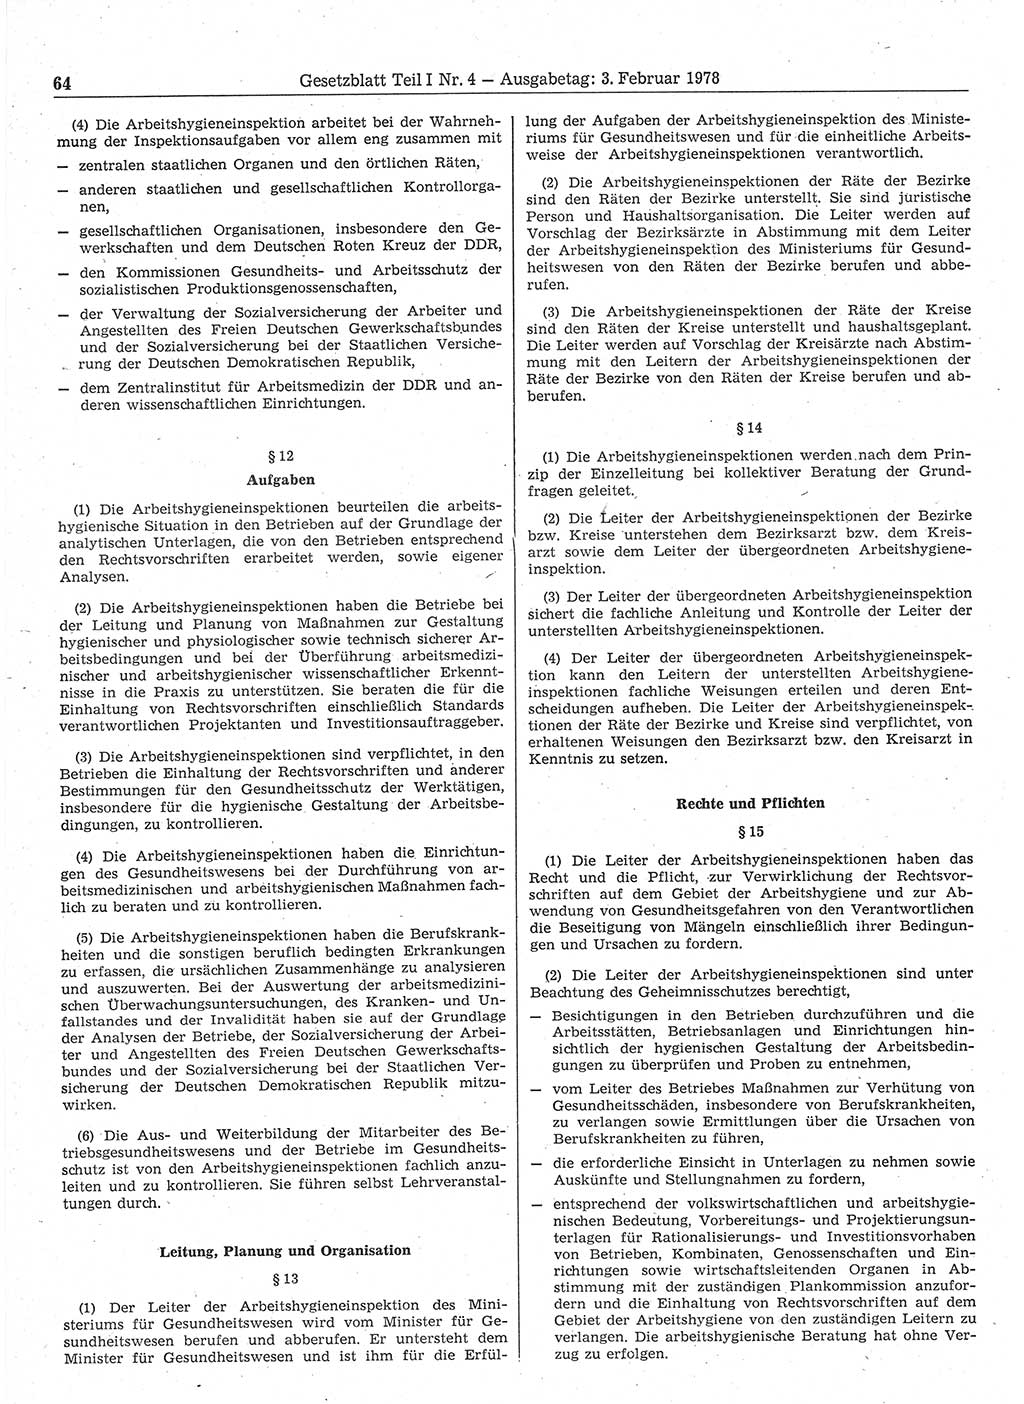 Gesetzblatt (GBl.) der Deutschen Demokratischen Republik (DDR) Teil Ⅰ 1978, Seite 64 (GBl. DDR Ⅰ 1978, S. 64)